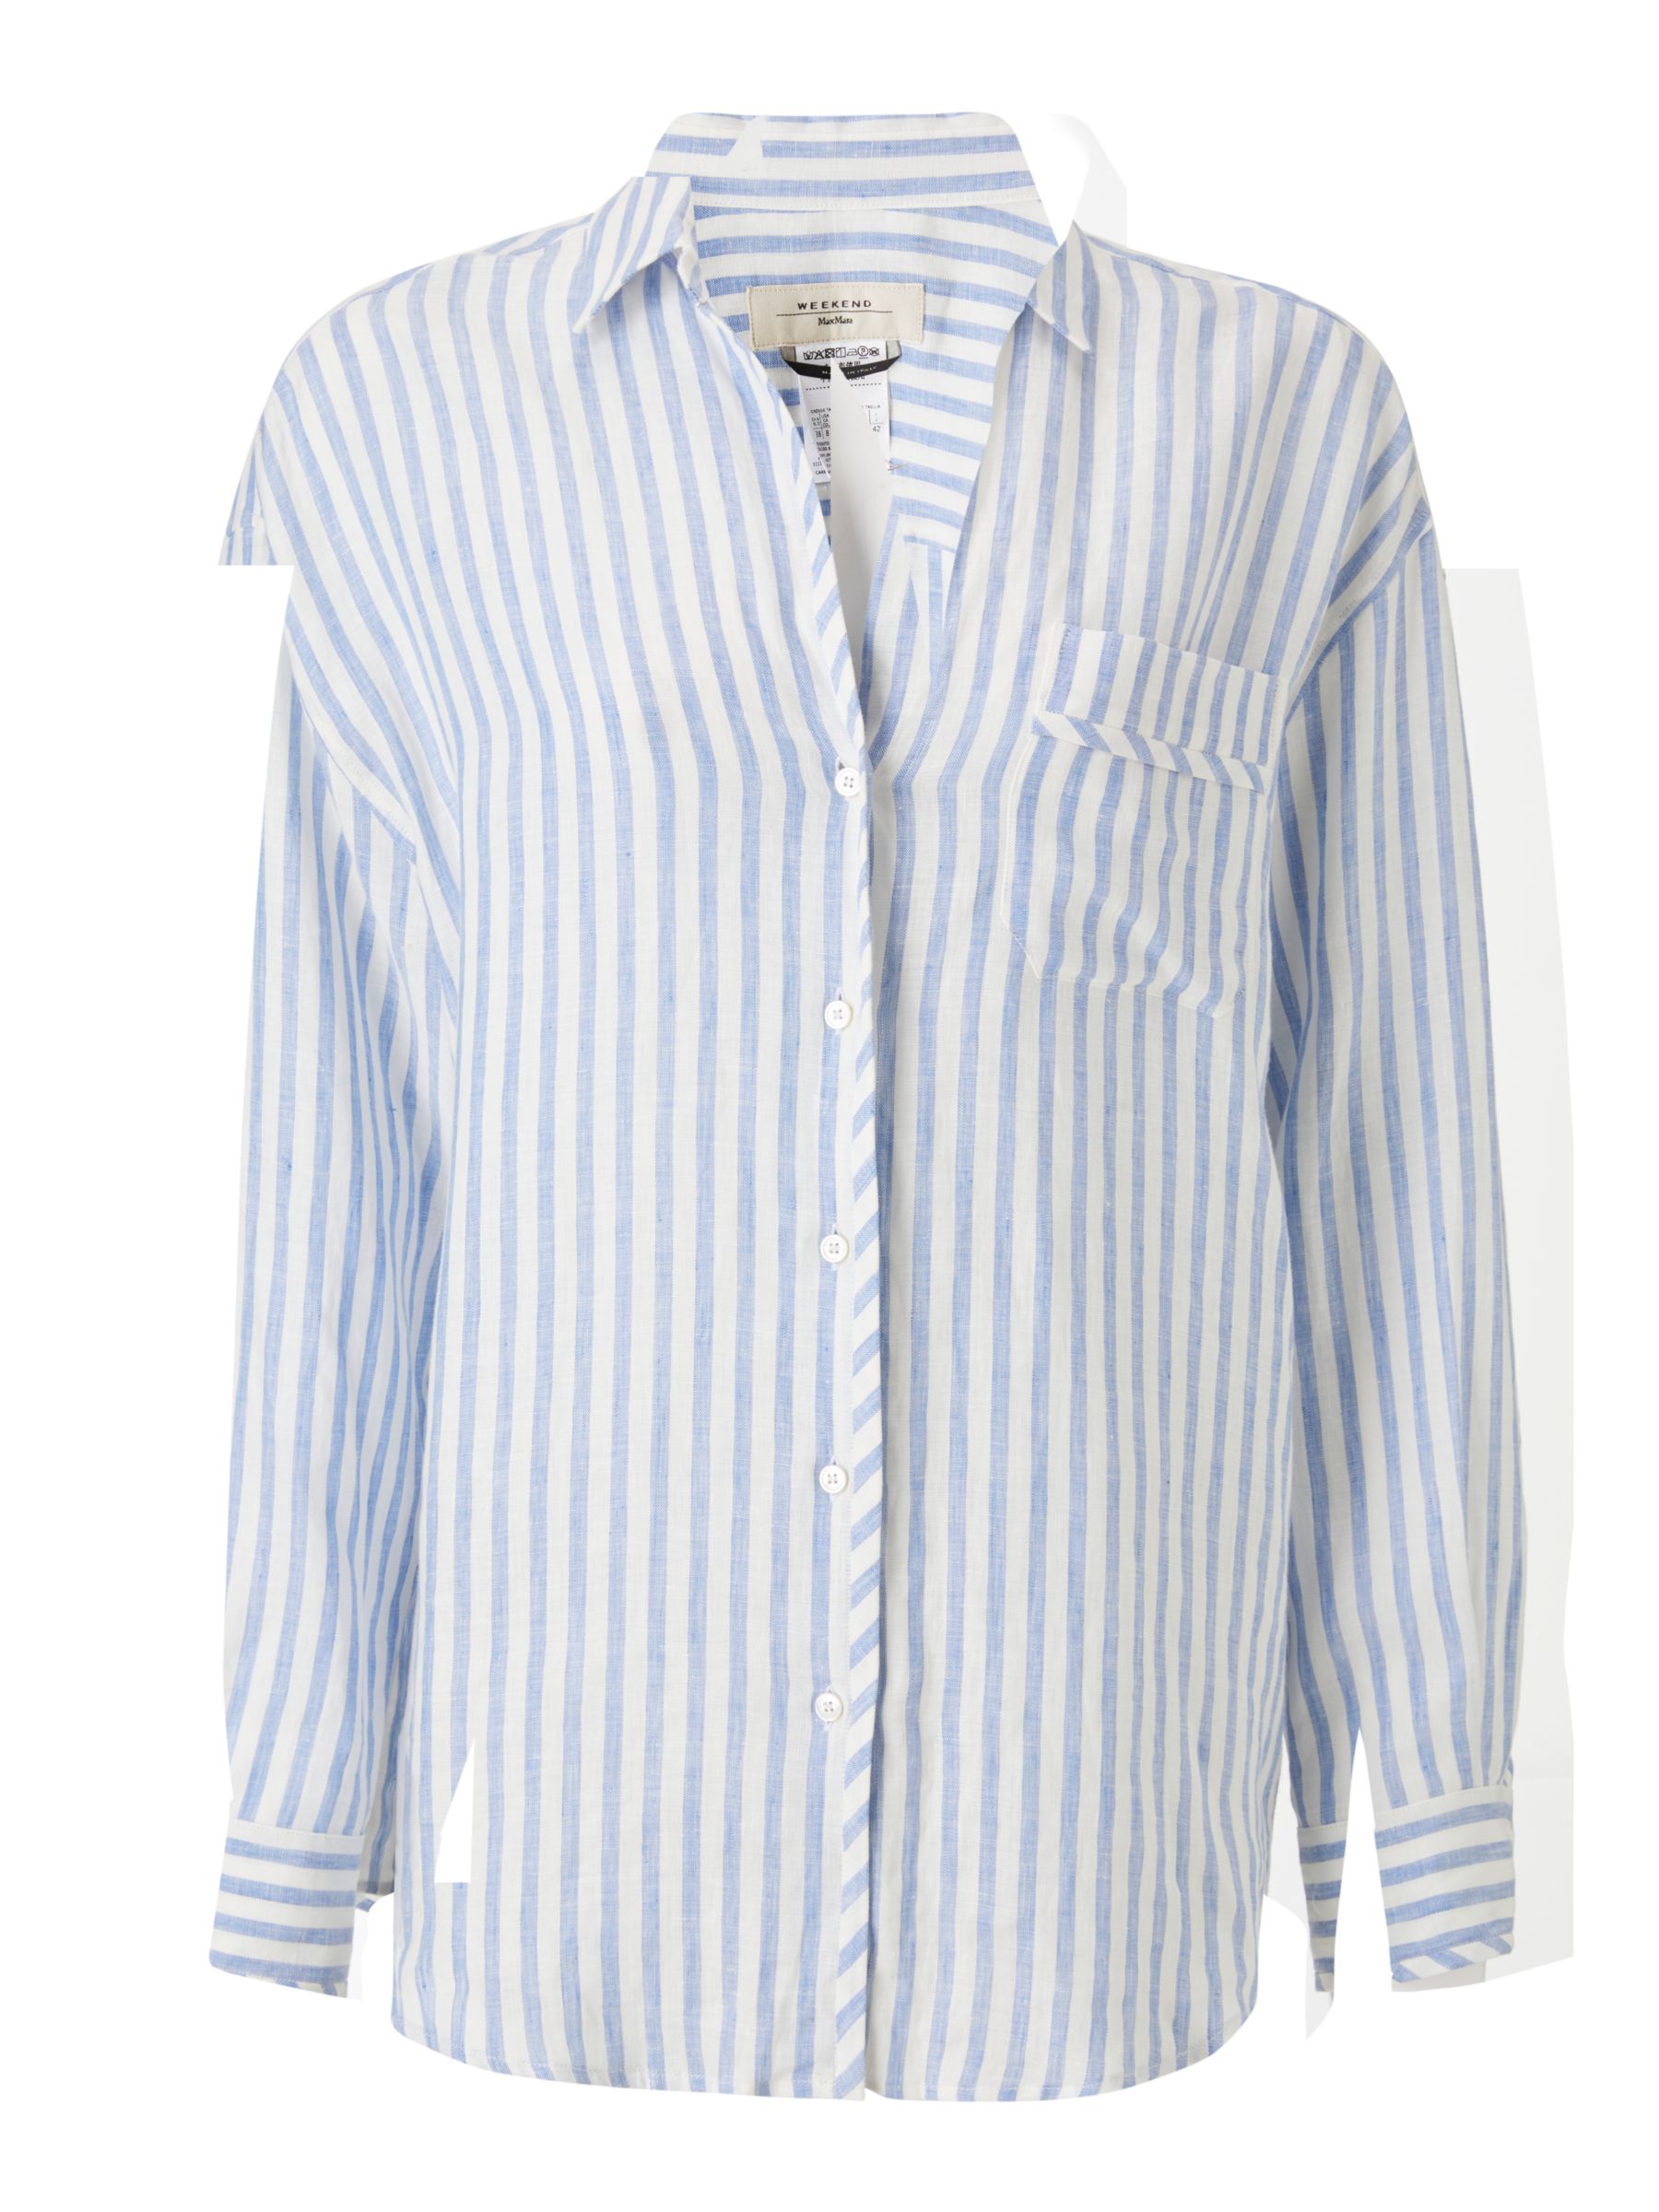 Weekend MaxMara Linen Stripe Shirt, Light Blue at John Lewis & Partners